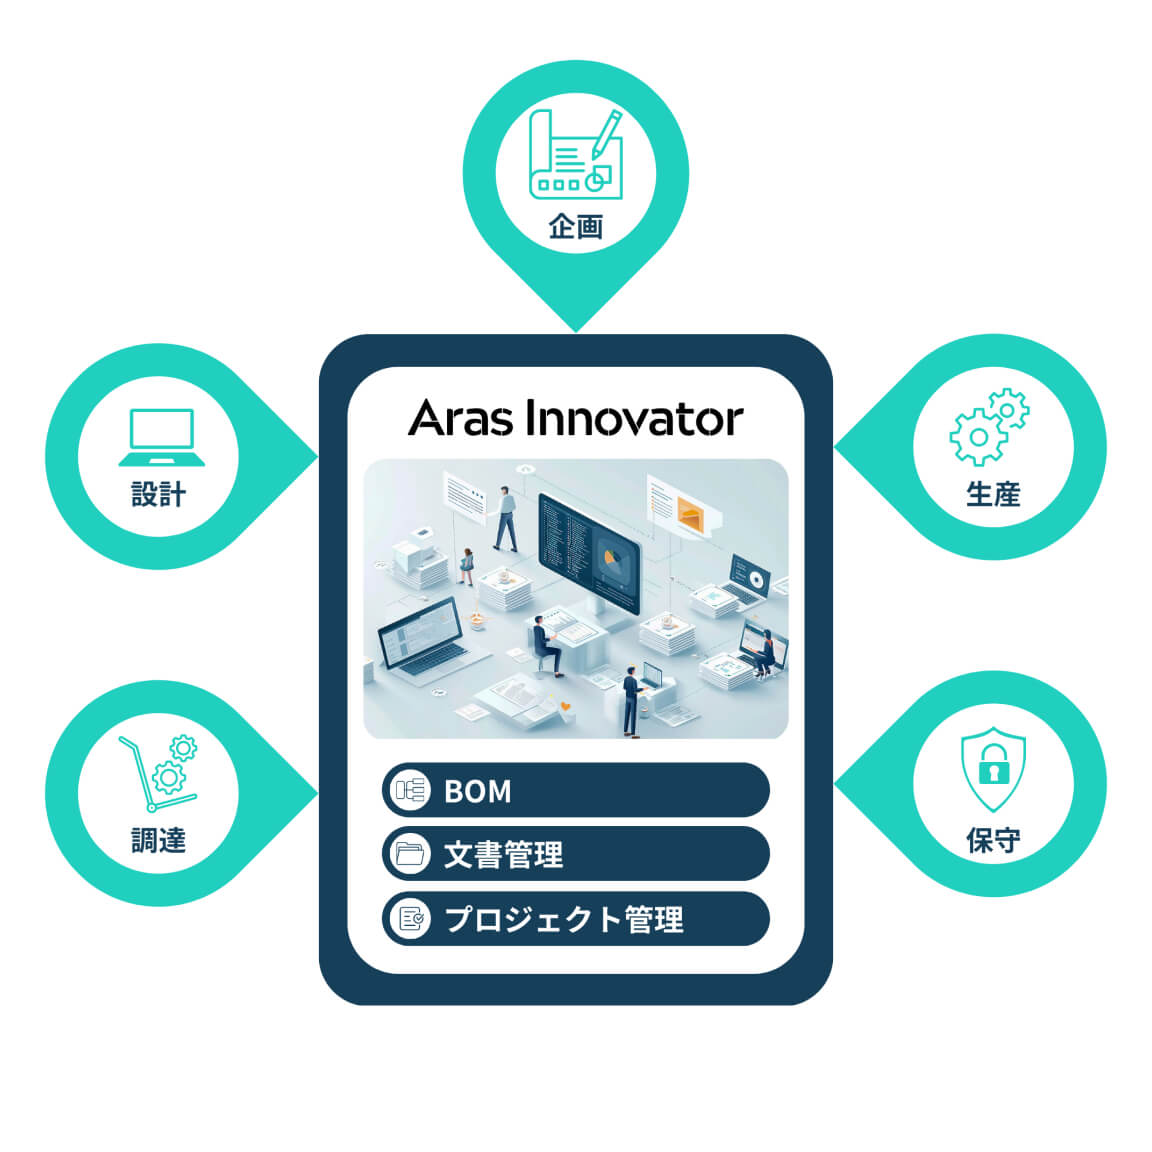 Aras Innovator（BOM、文書管理、プロジェクト管理）